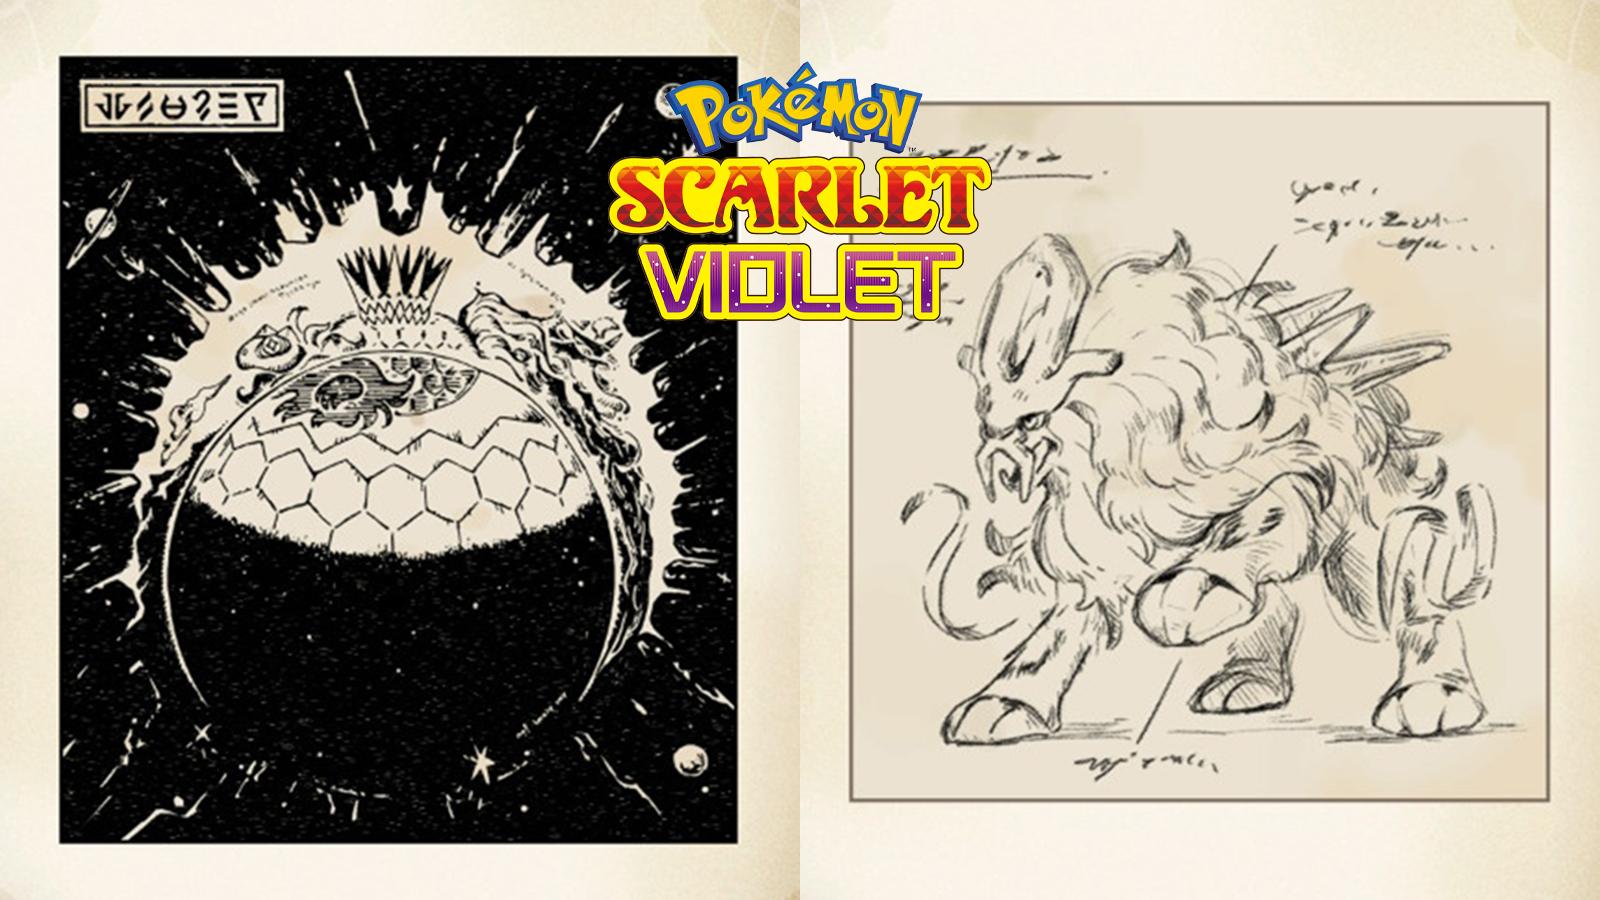  Pokémon Scarlet/Pokémon Violet Expansion Pass: The